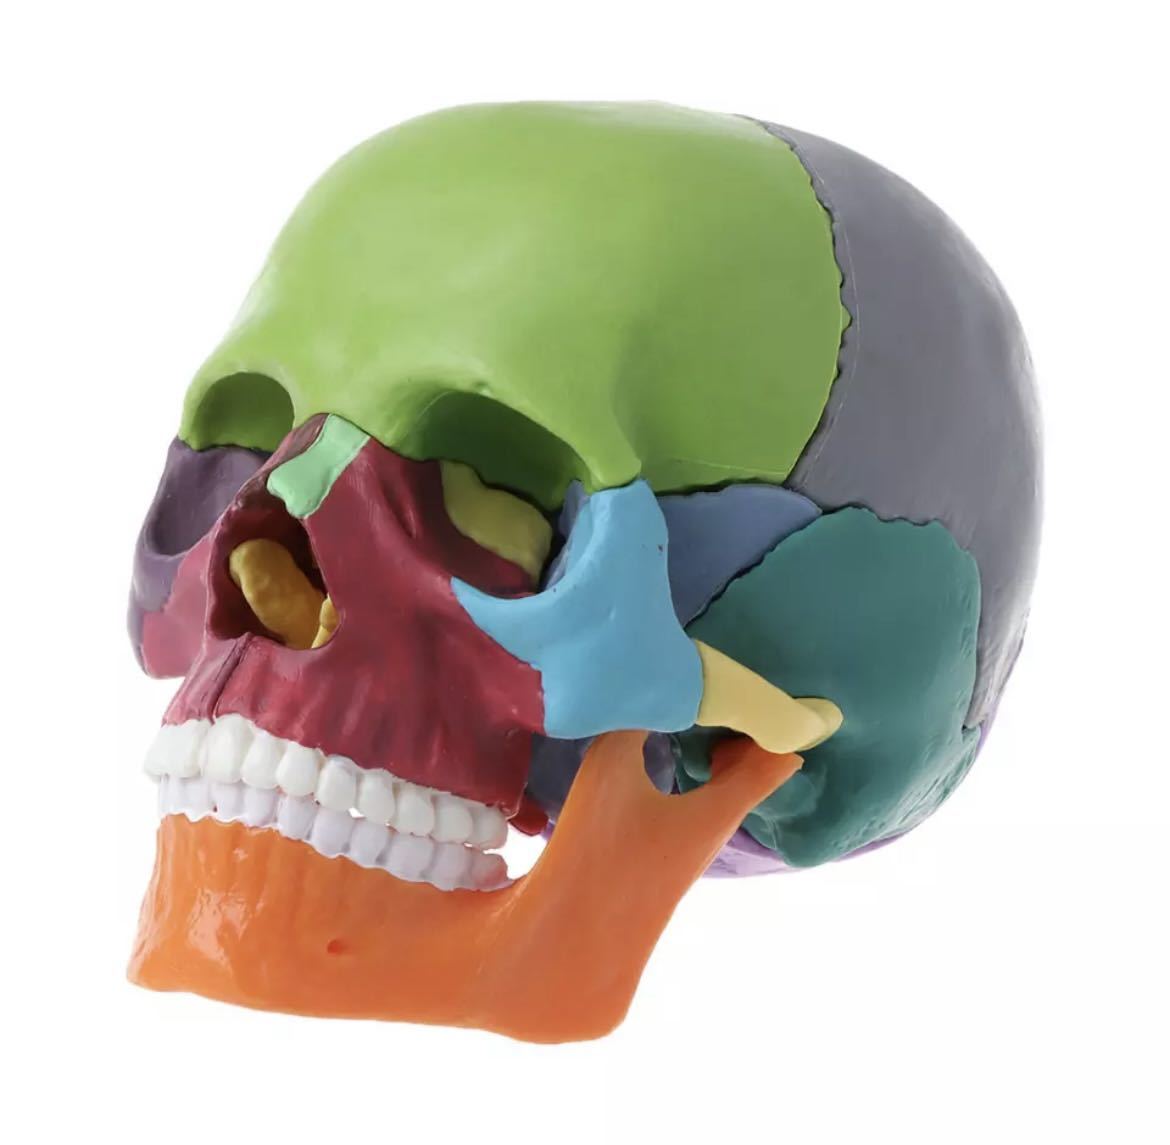 頭蓋骨分解パズル 人体模型 医療教育ツール 医療 知育玩具 おもちゃ 玩具 知育 医療 頭蓋骨 骨 パズル カラフル 680の画像1